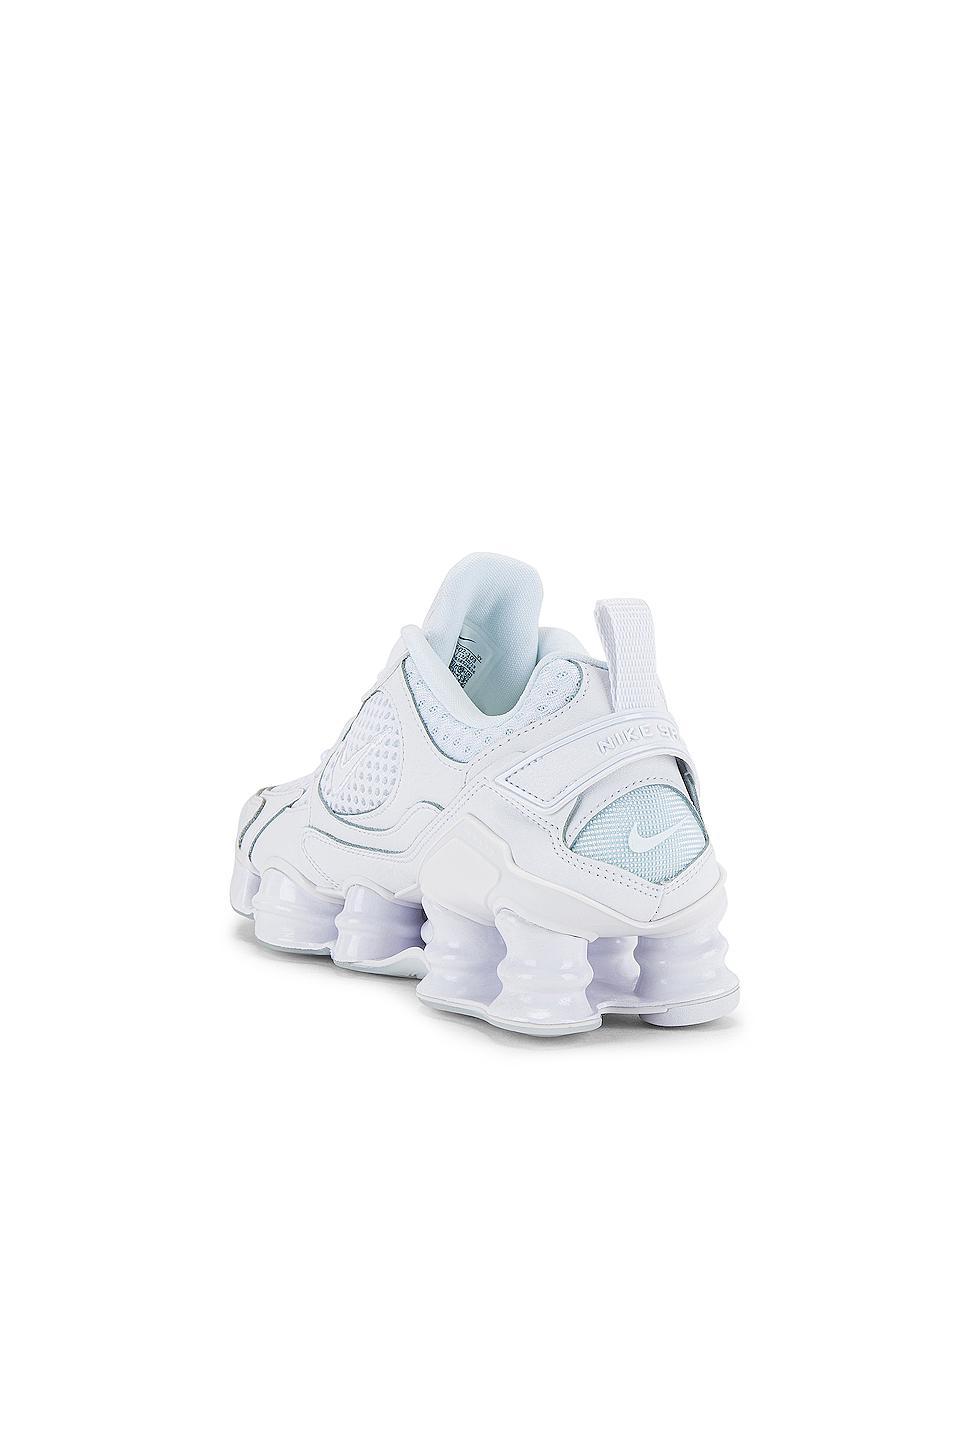 Nike Shox Nova 2 - Shoes in White | Lyst